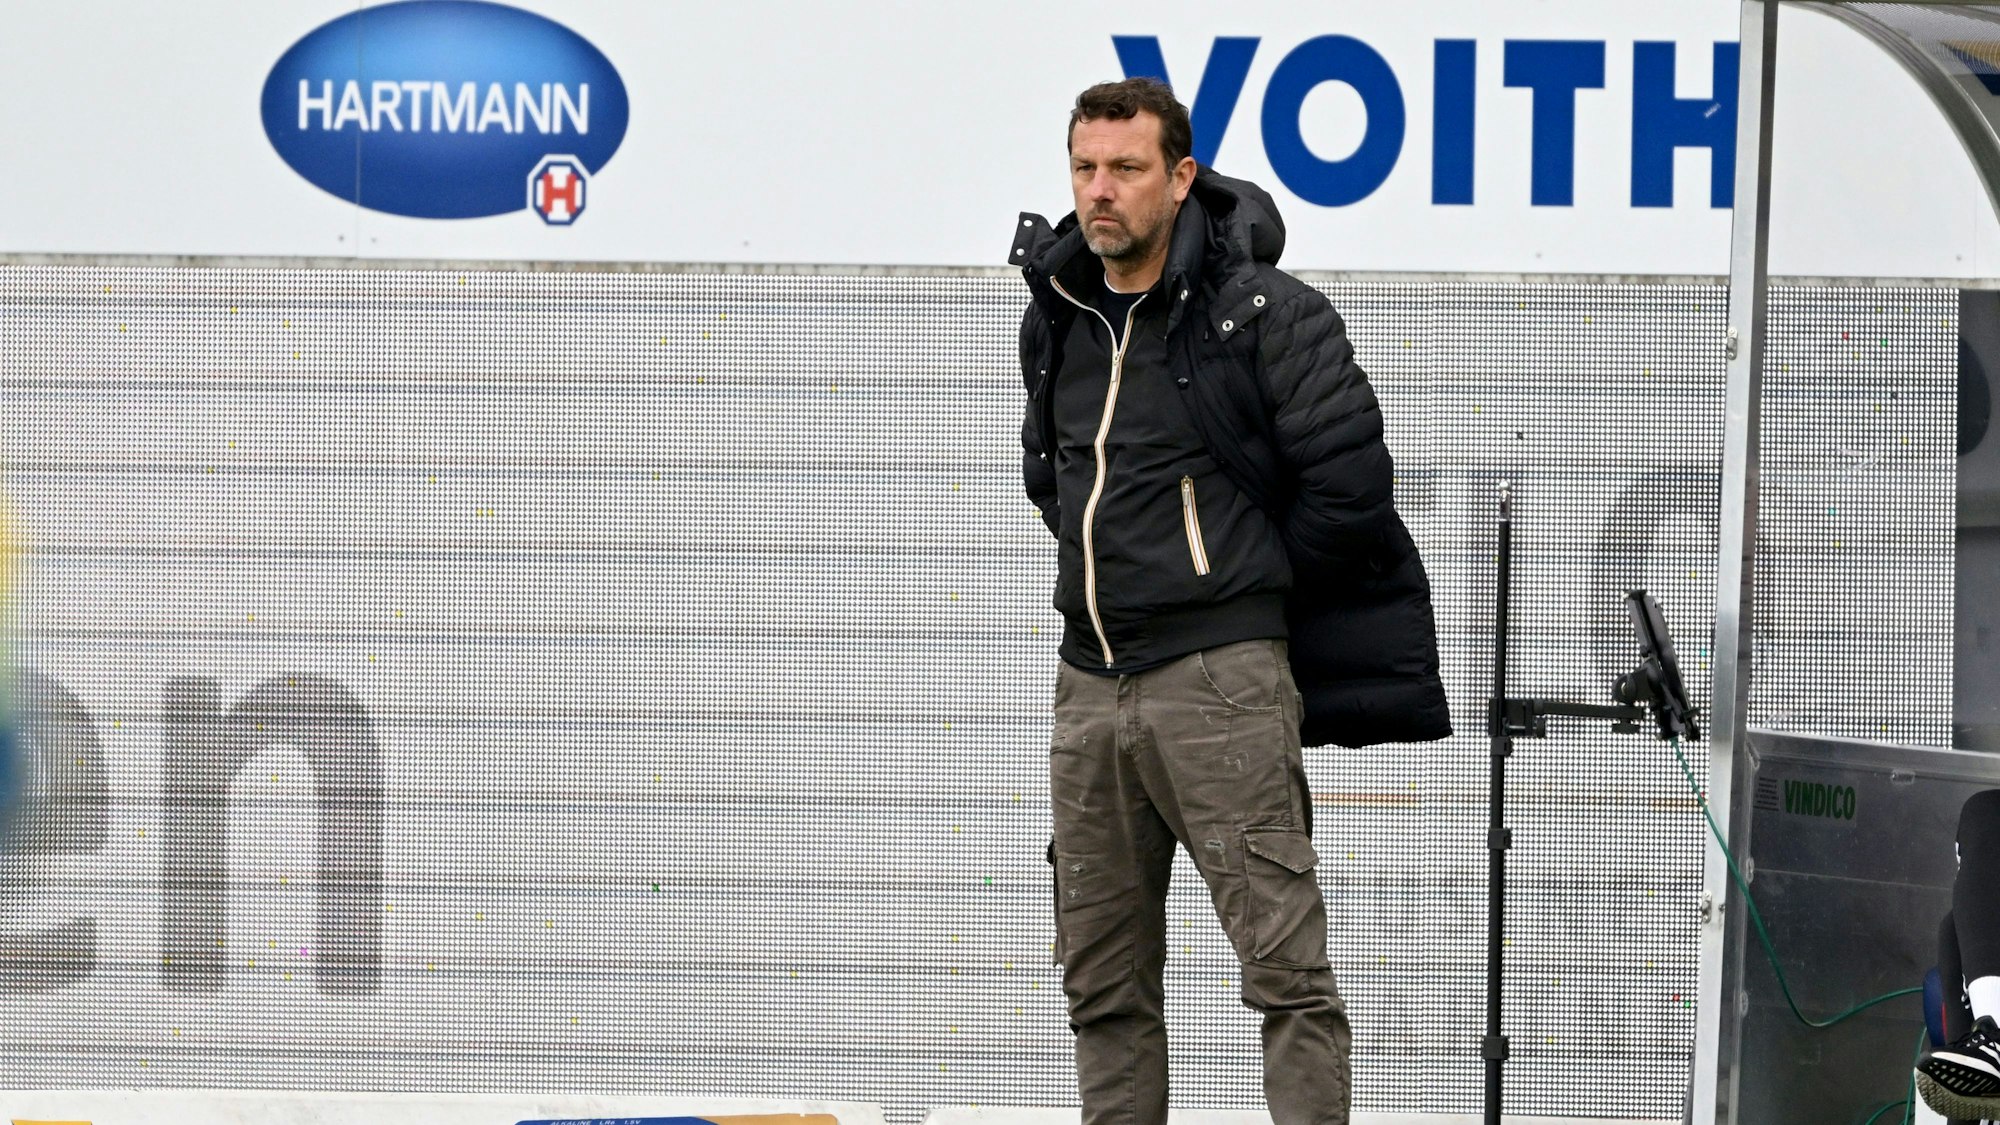 Nürnbergs Trainer Markus Weinzierl verfolgt das Spielgeschehen.